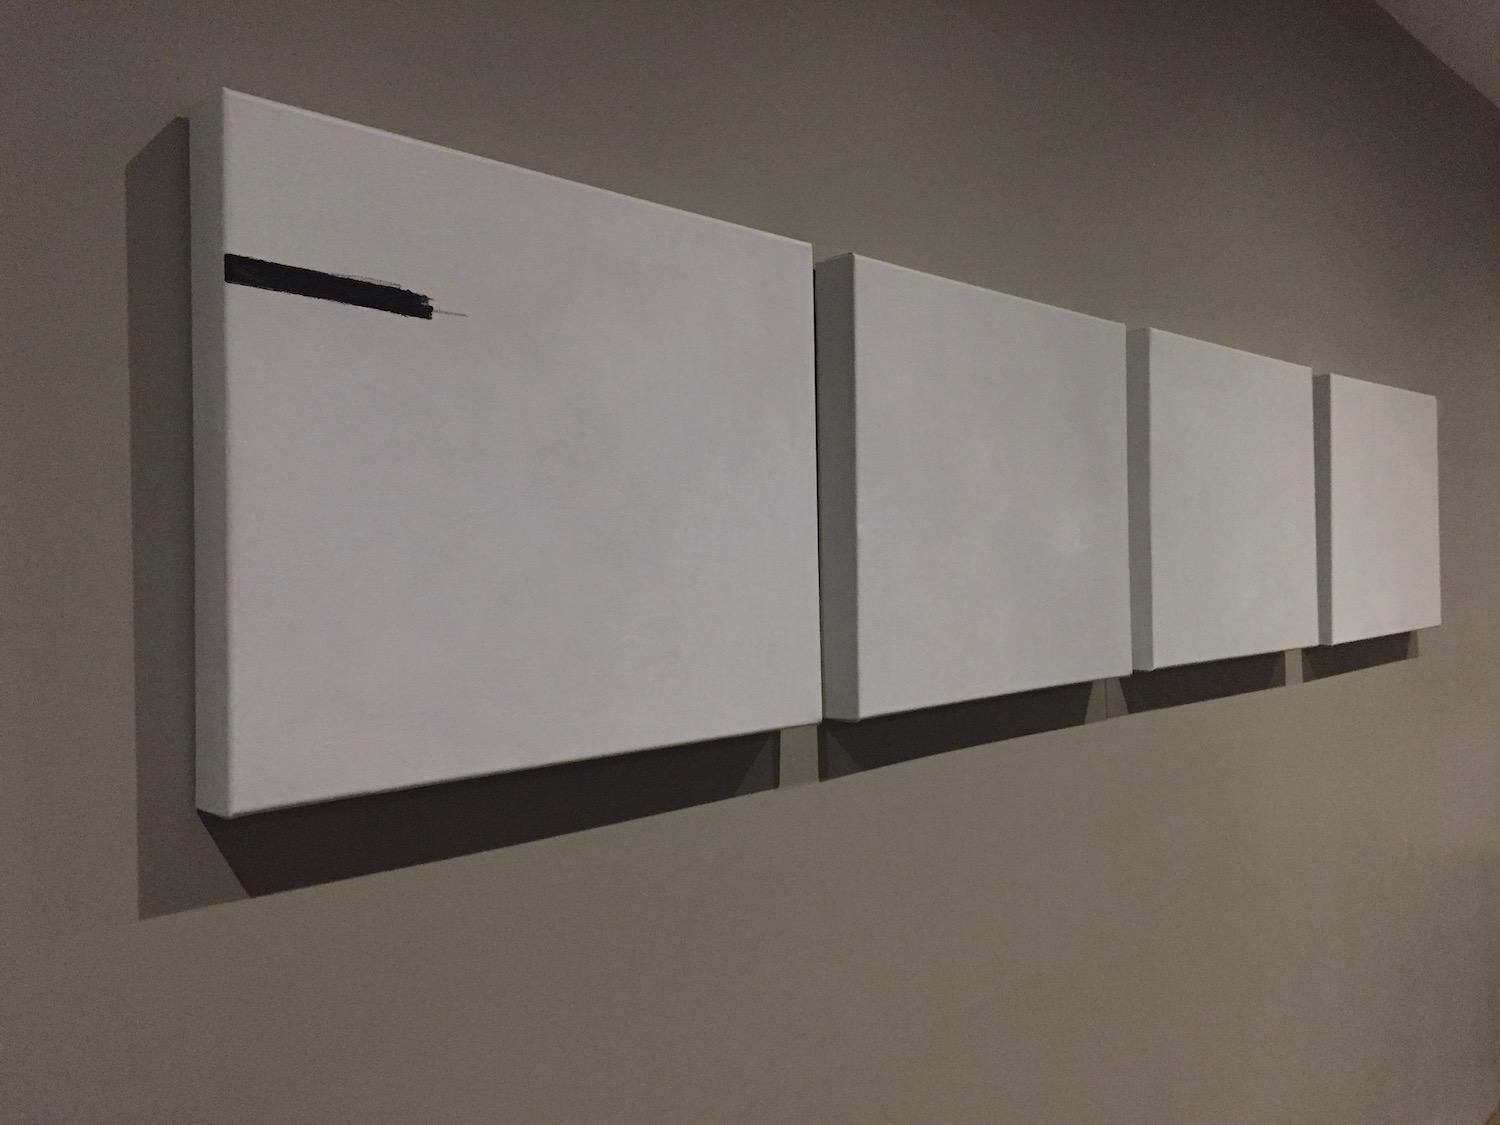 C'est là que je dessine la ligne - 4 peintures abstraites minimalistes, blanc cassé, noires - Painting de Andrea Stajan-Ferkul